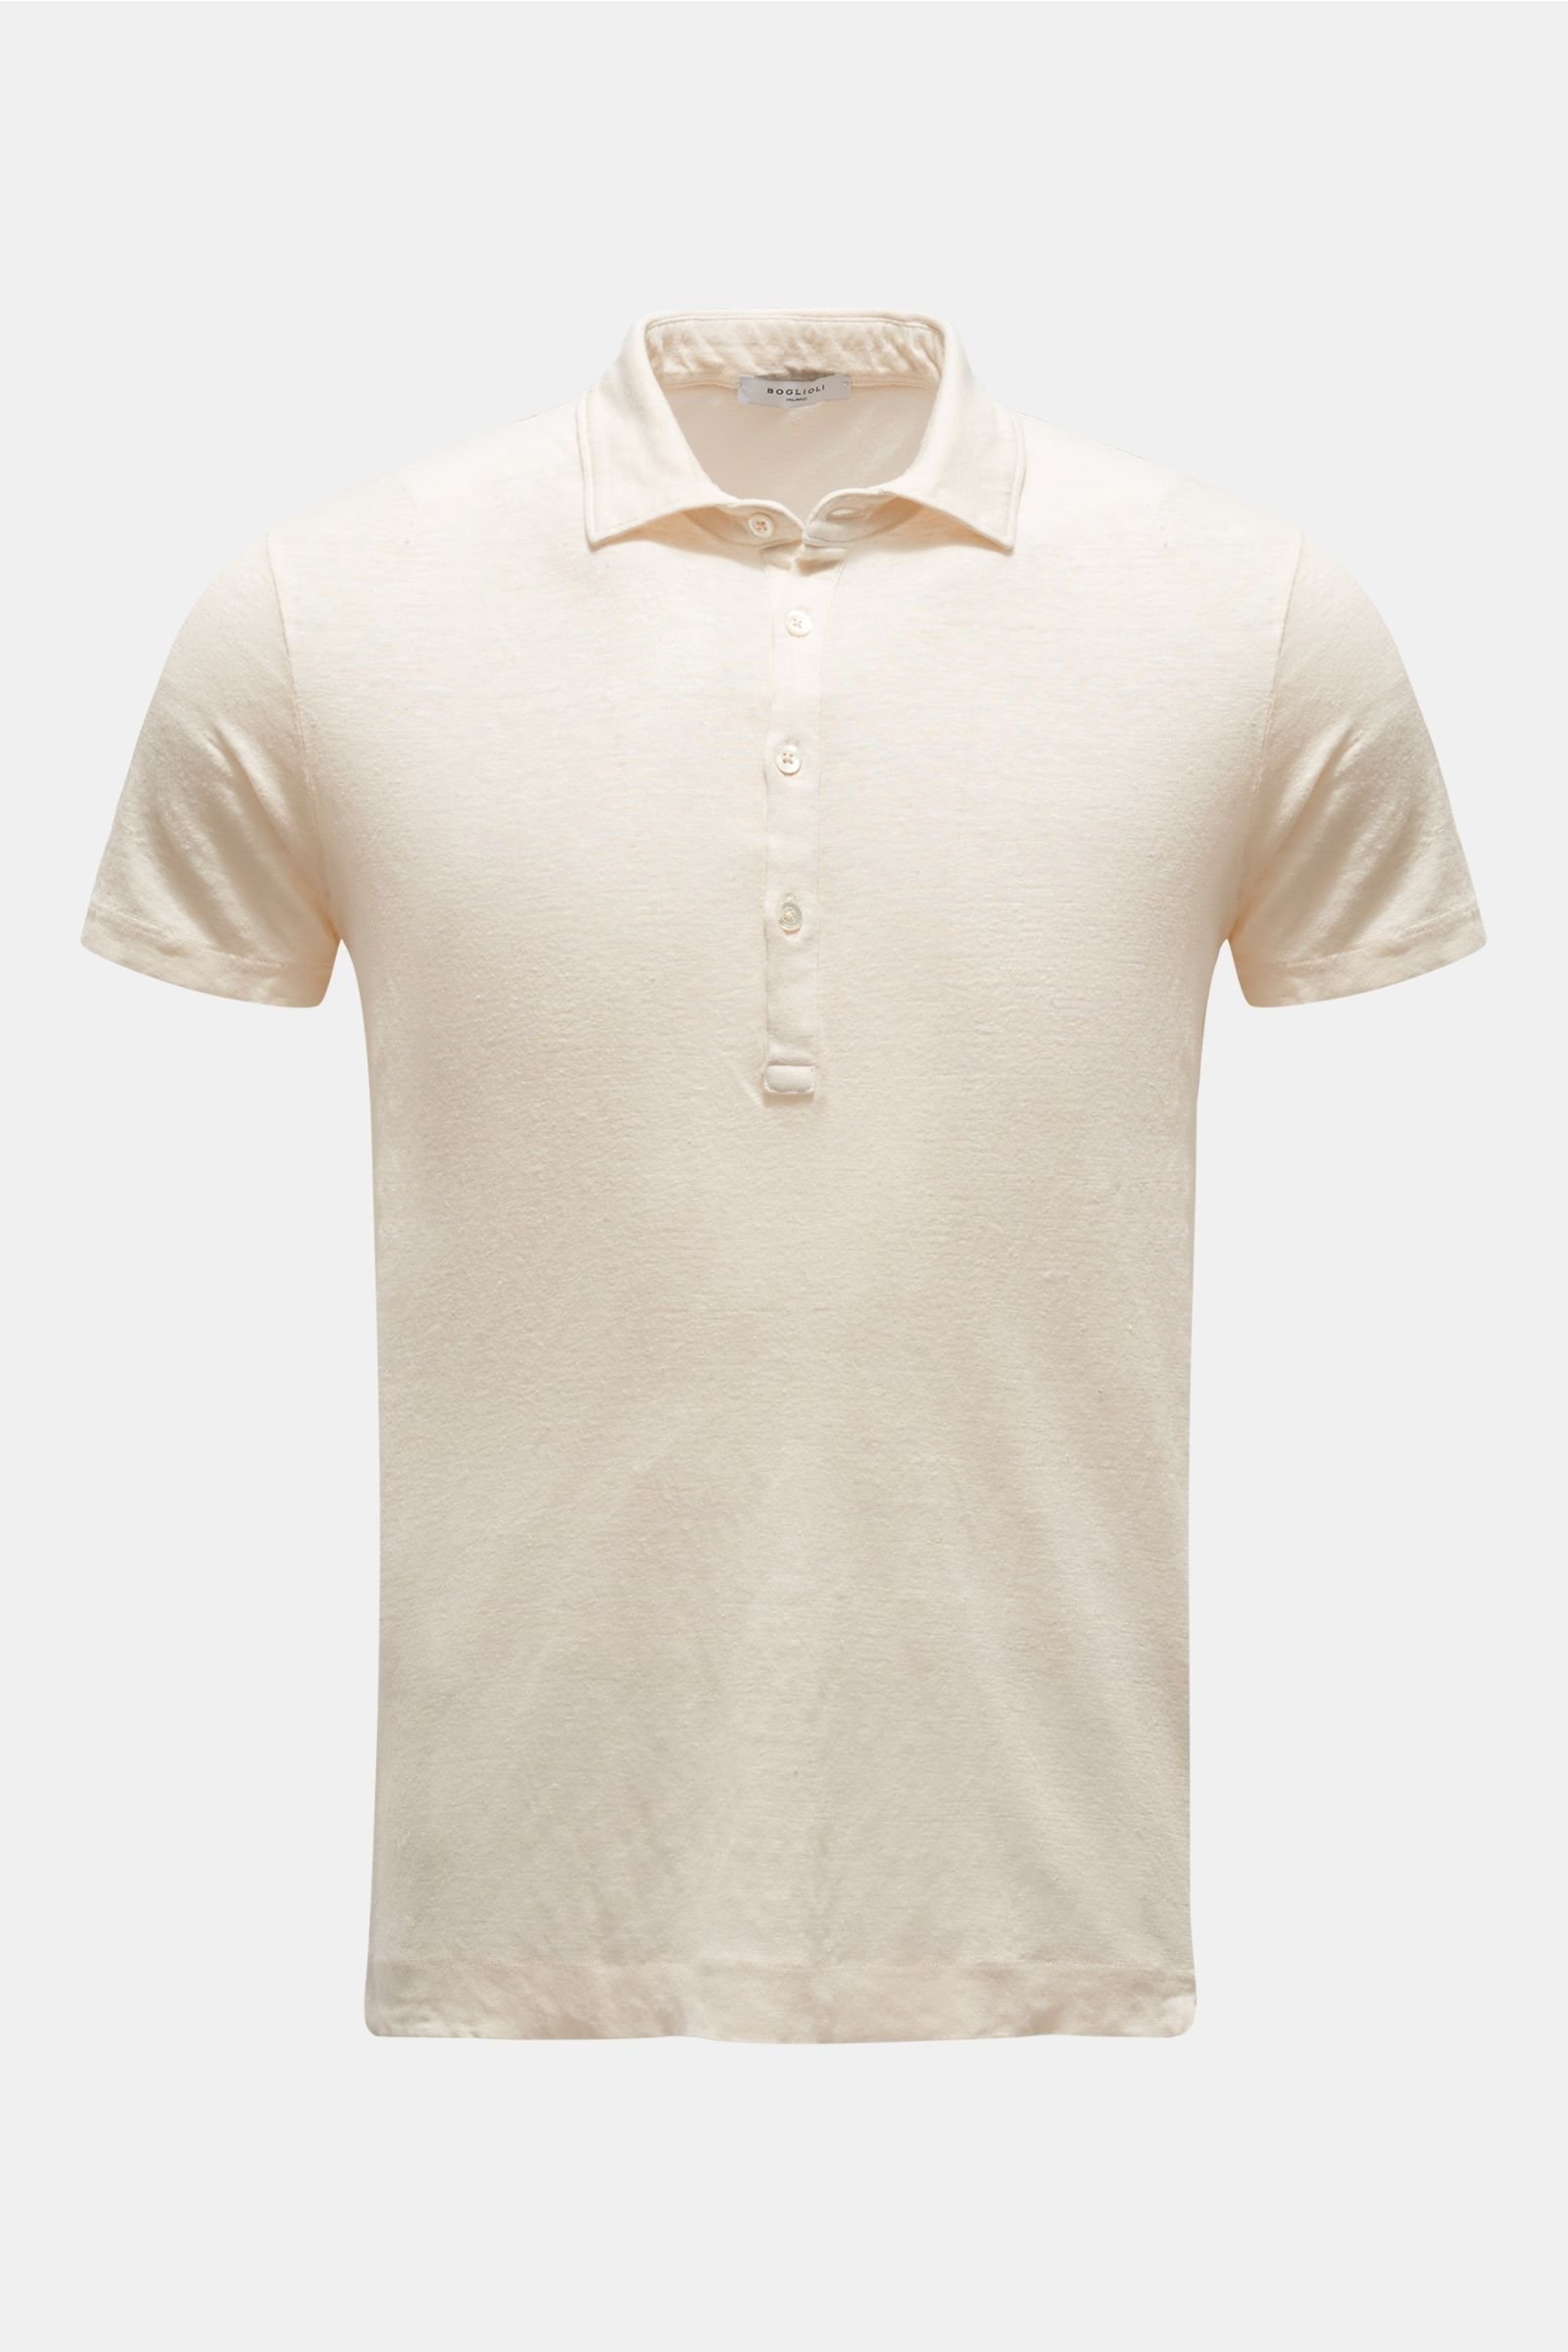 Linen polo shirt cream